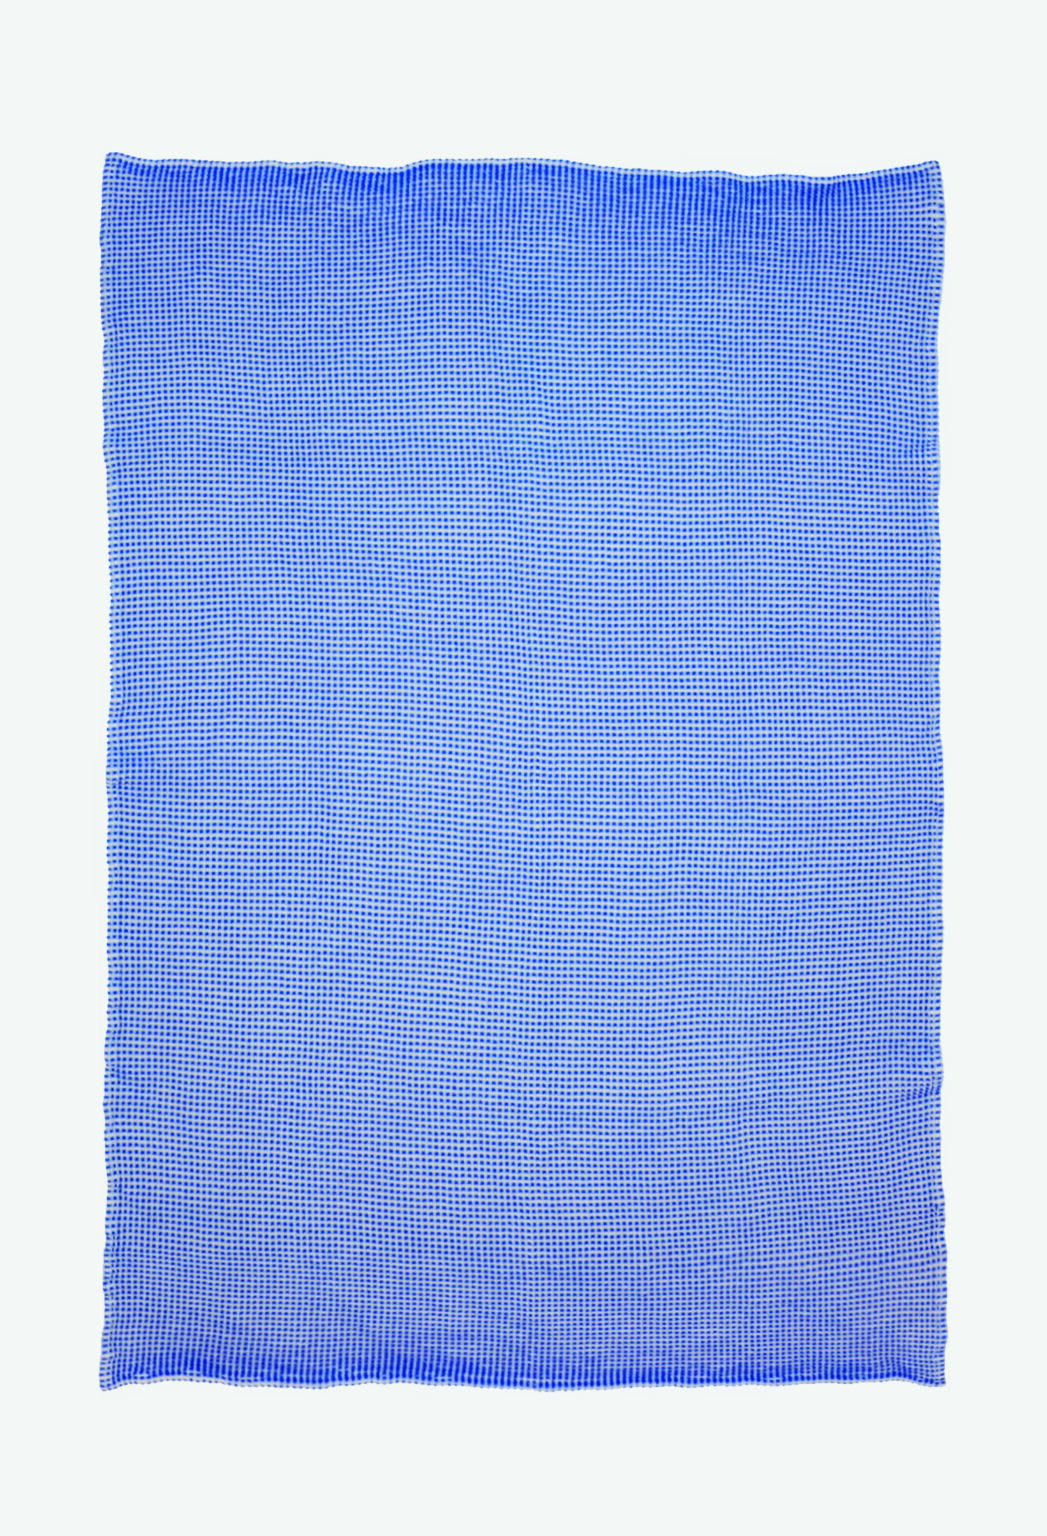 Schoenstaub SECA Large Towel Blue